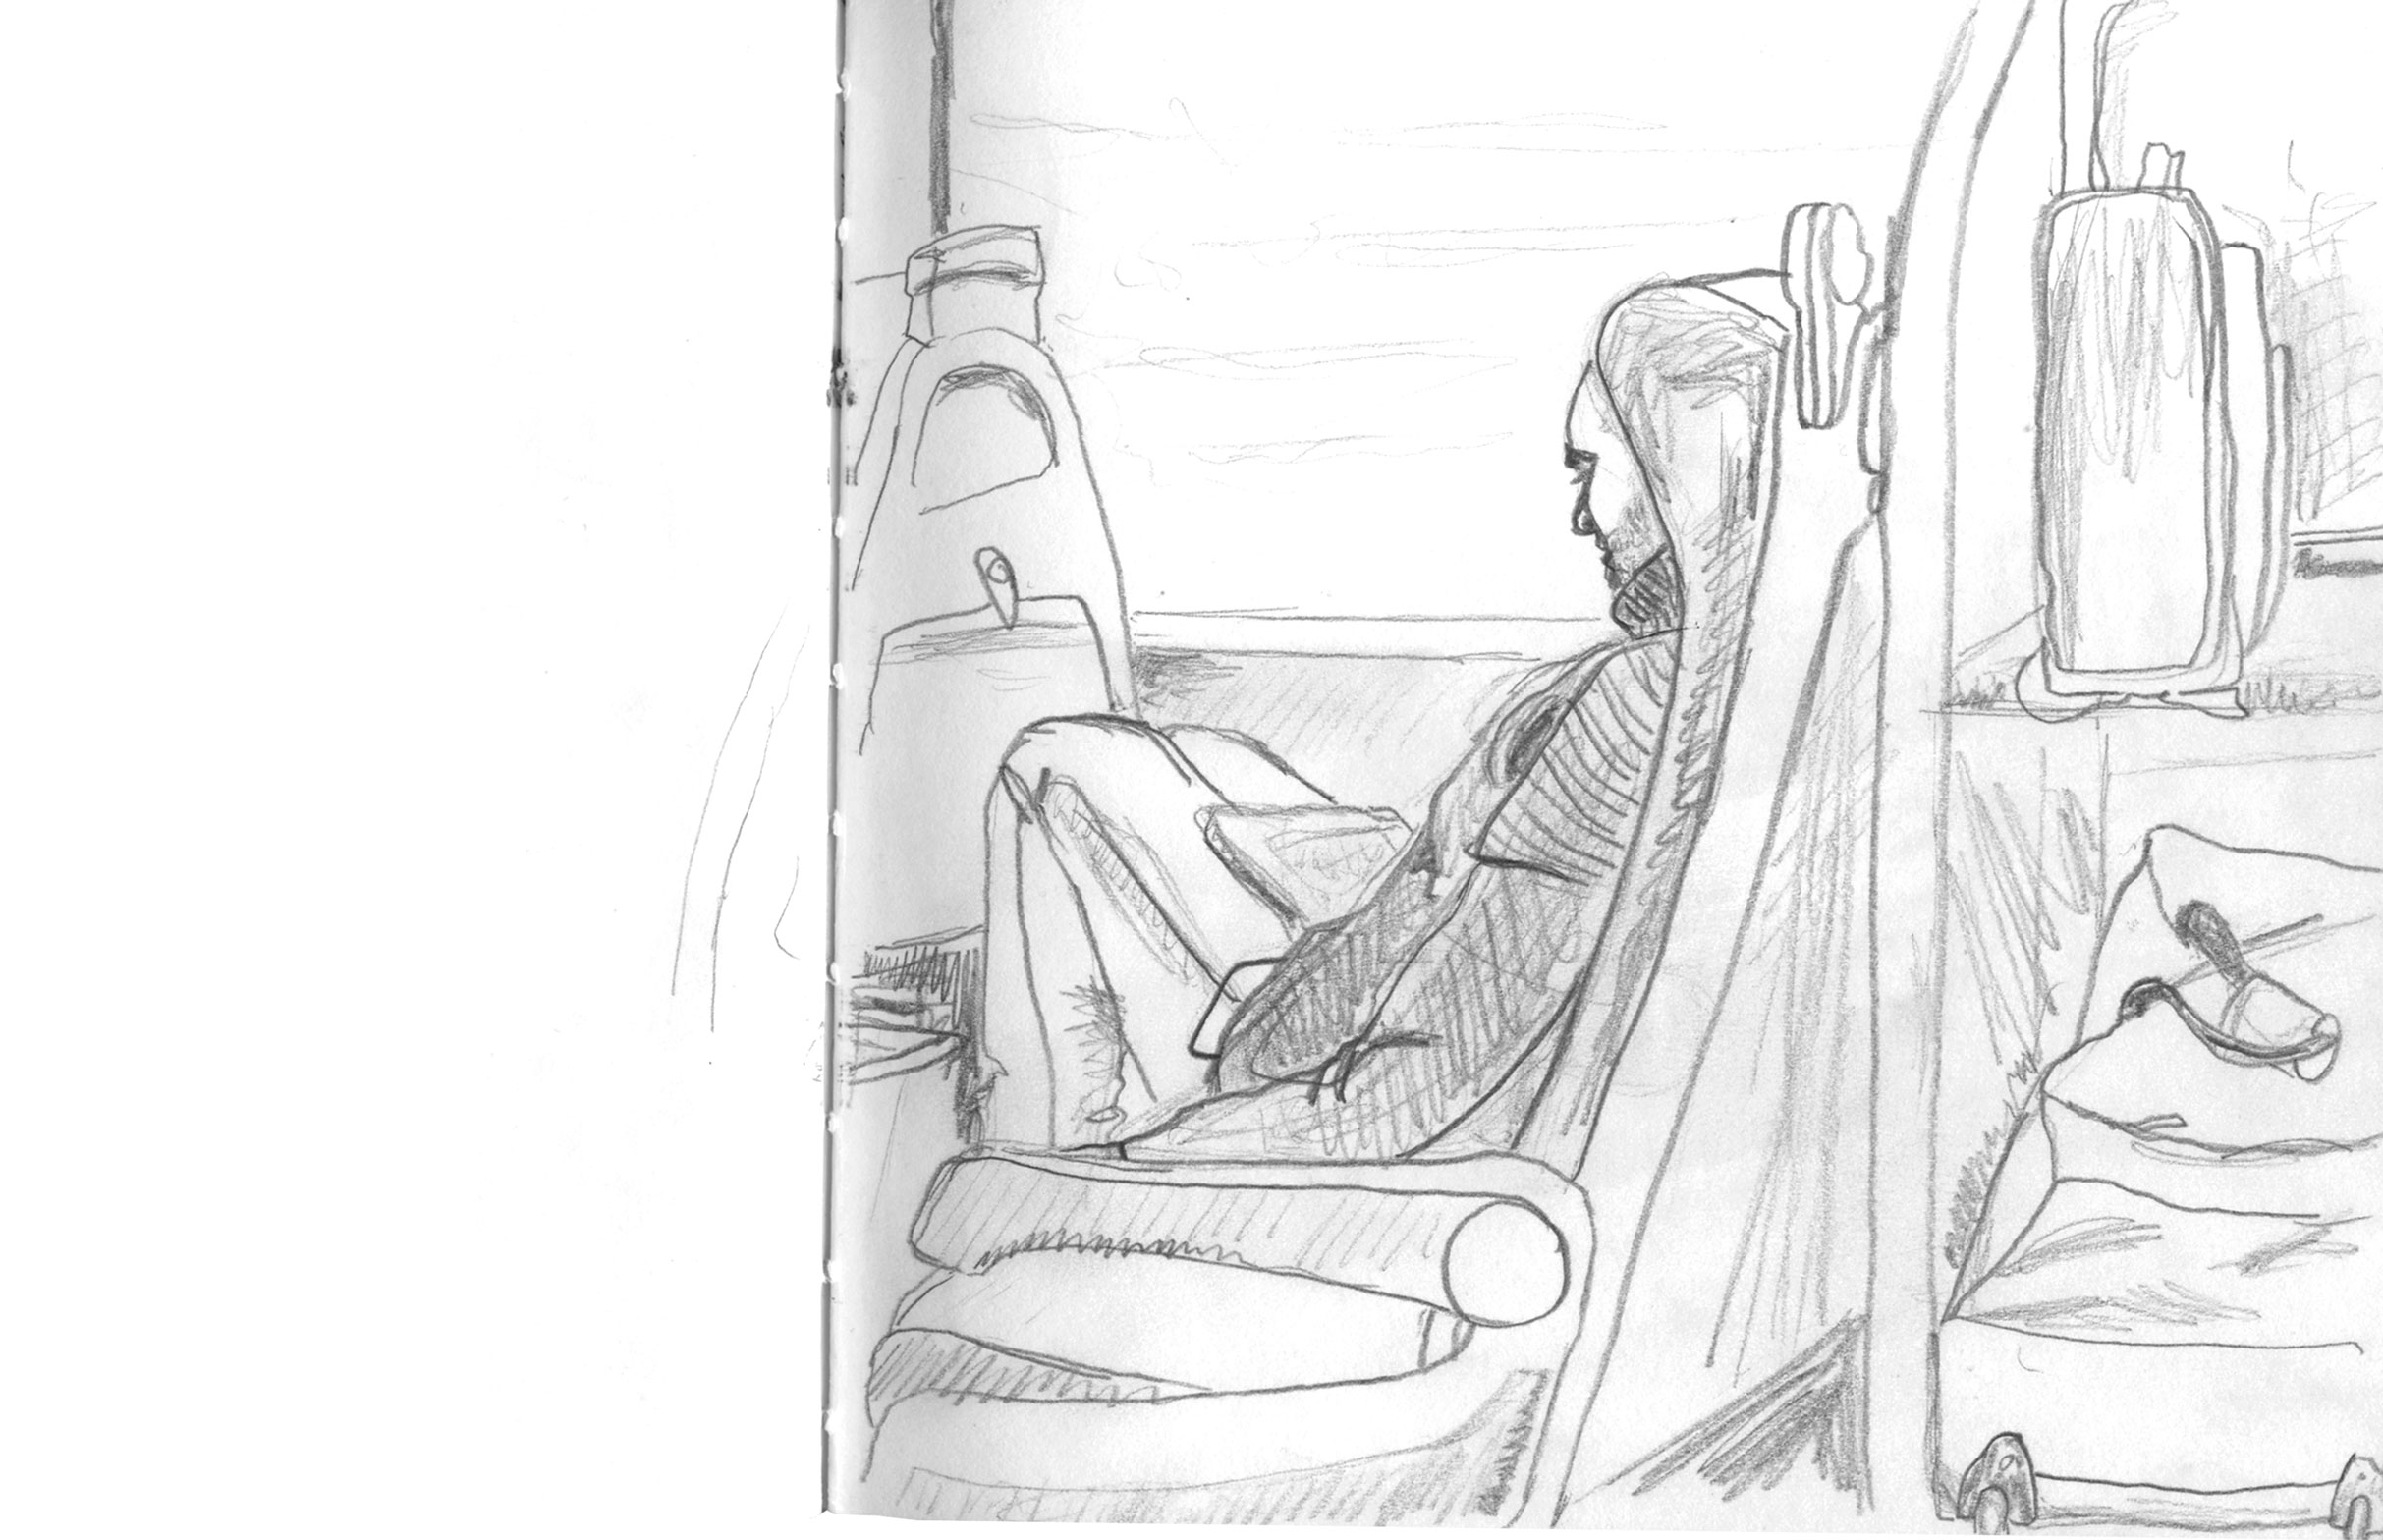 sketch of commuter sketch people walking by ellen vesters illustrator ma childrens book illustration